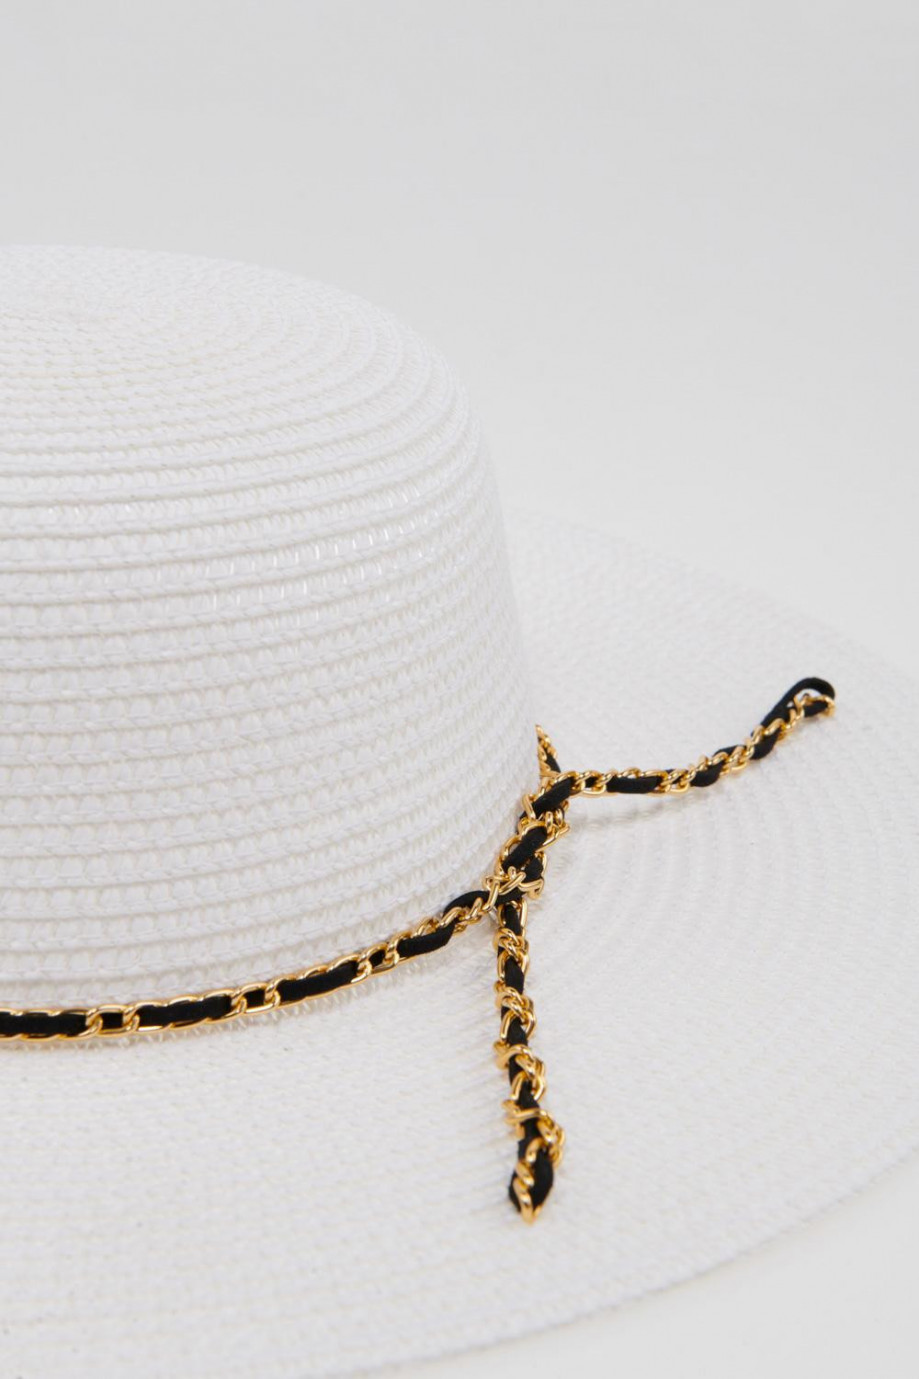 Sombrero de papel unicolor con cinta decorativa en contraste